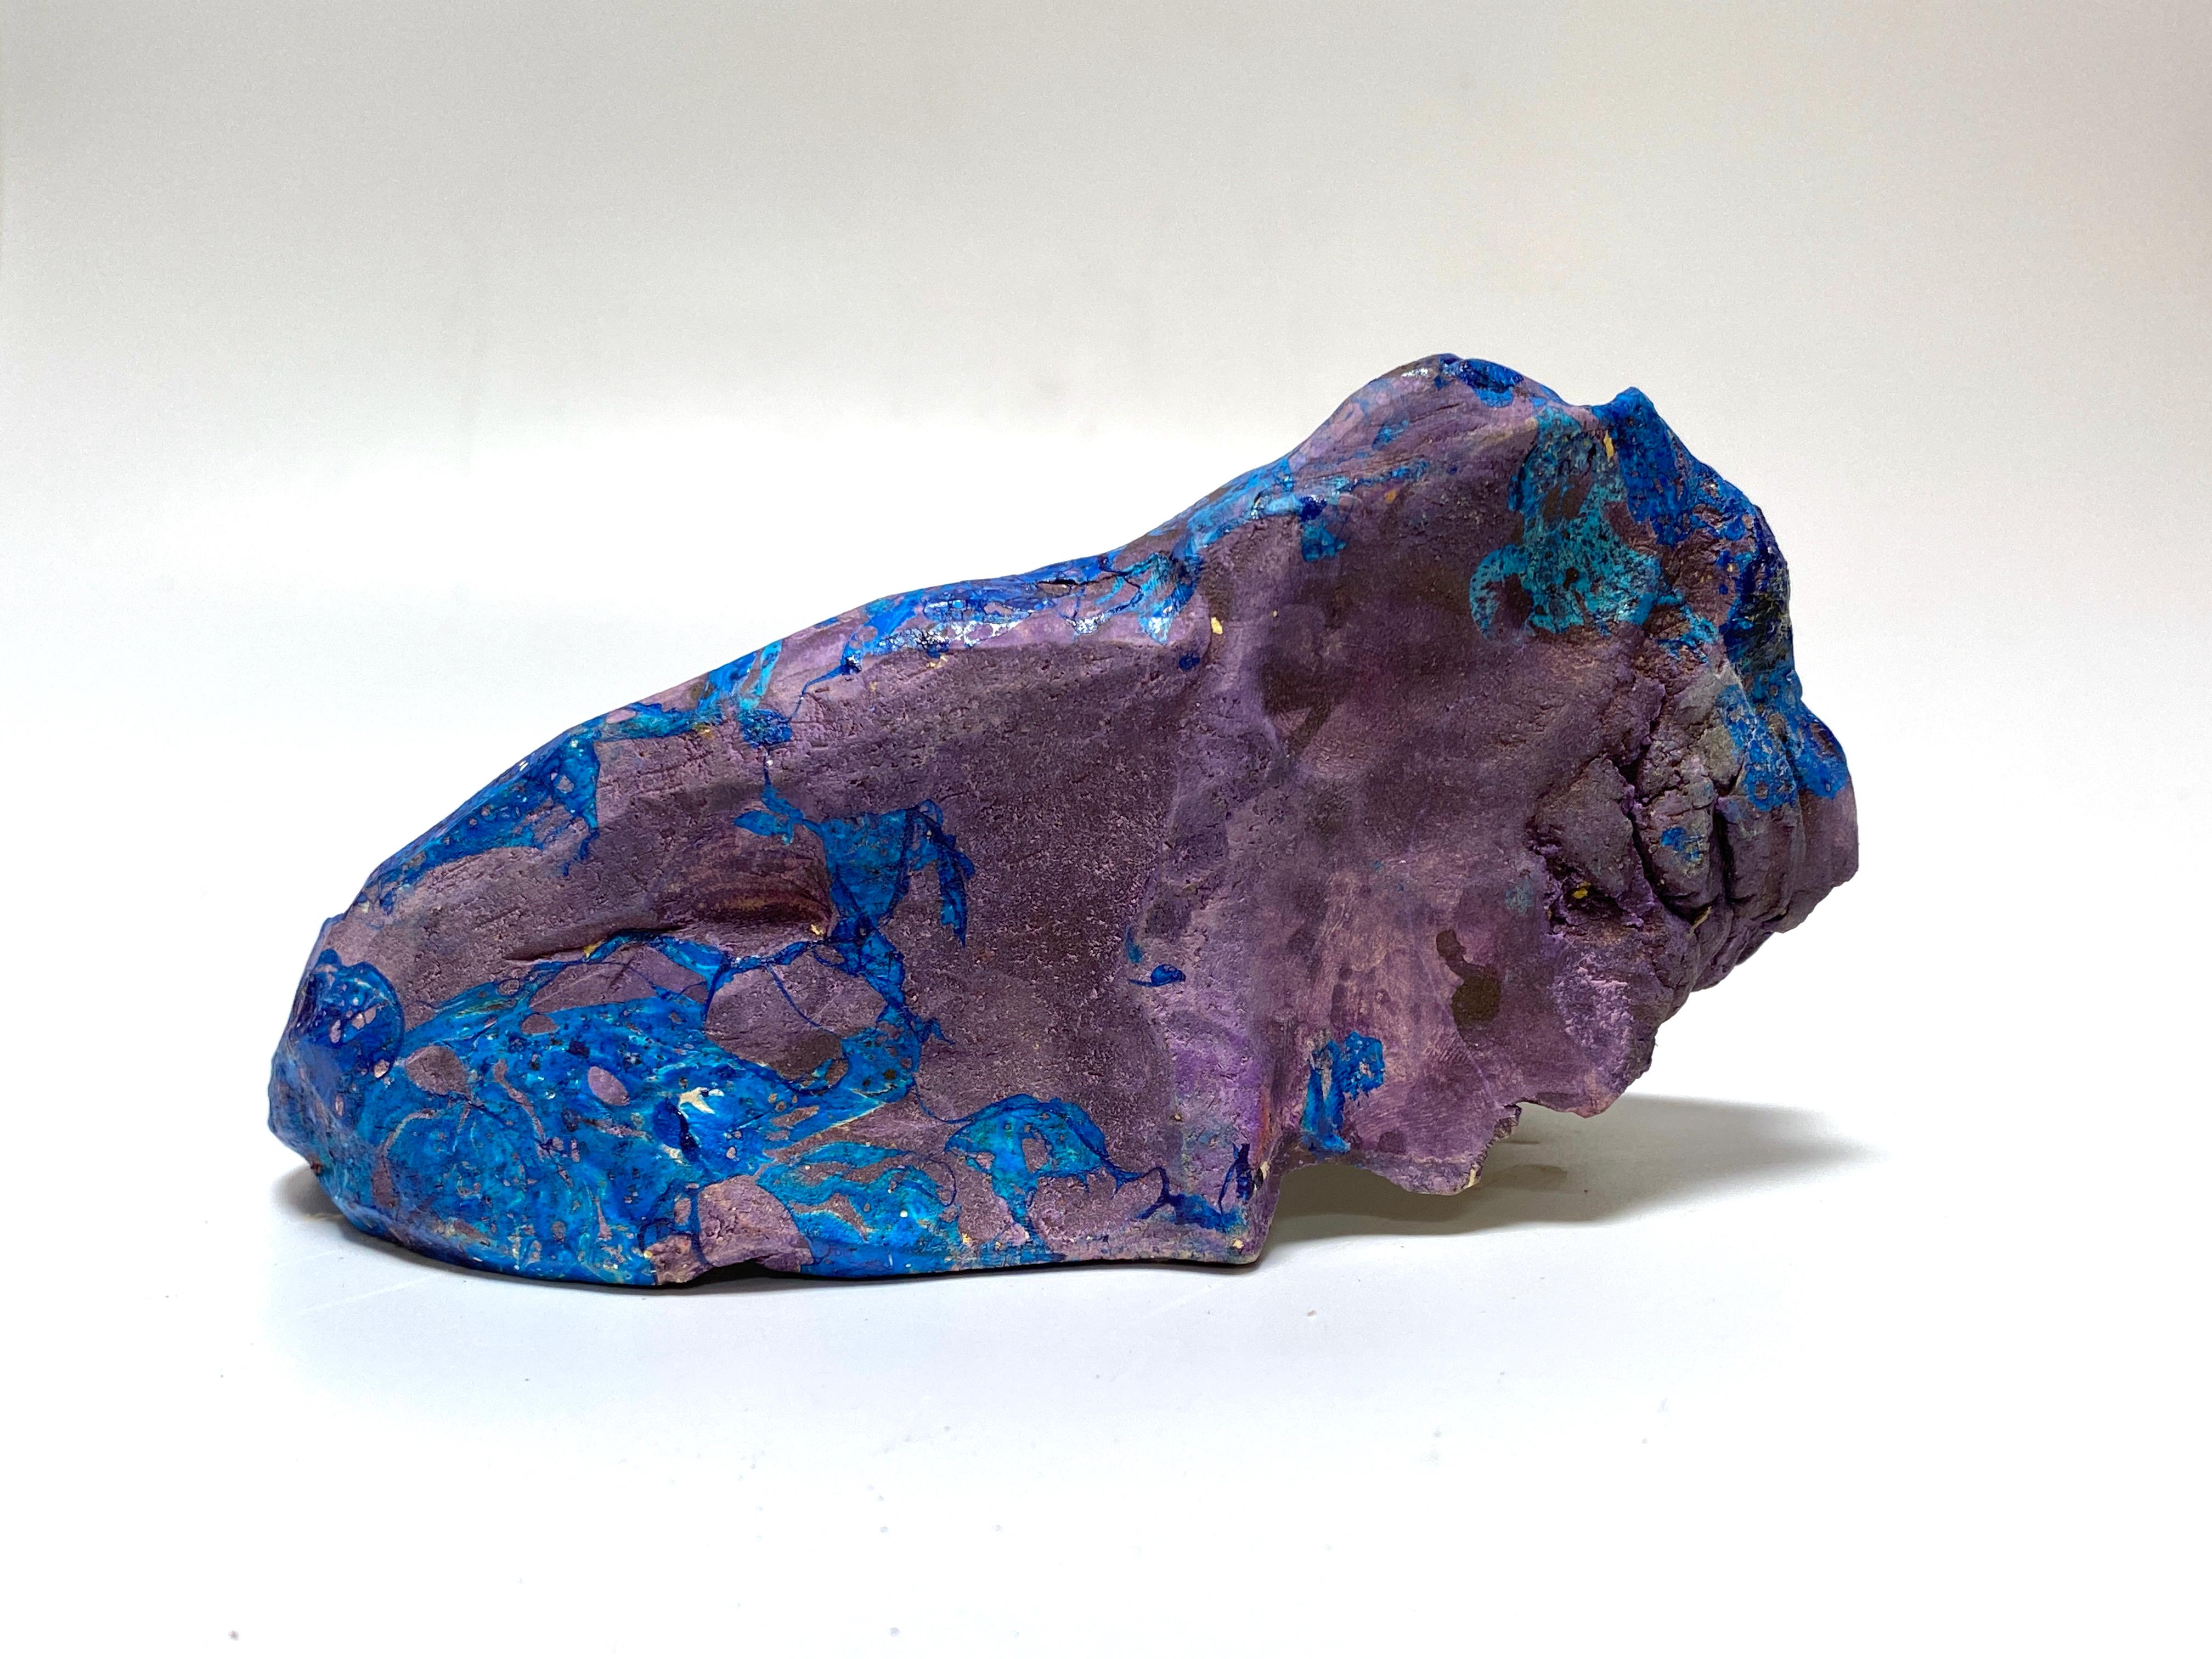 Artiste : Justin Siegel
Titre : Sans titre ( violet/bleu )
Médium : Sous-glace et encre sur poterie céramique
Taille : 6 x 3 1/2  x 3 pouces
Année : 2021